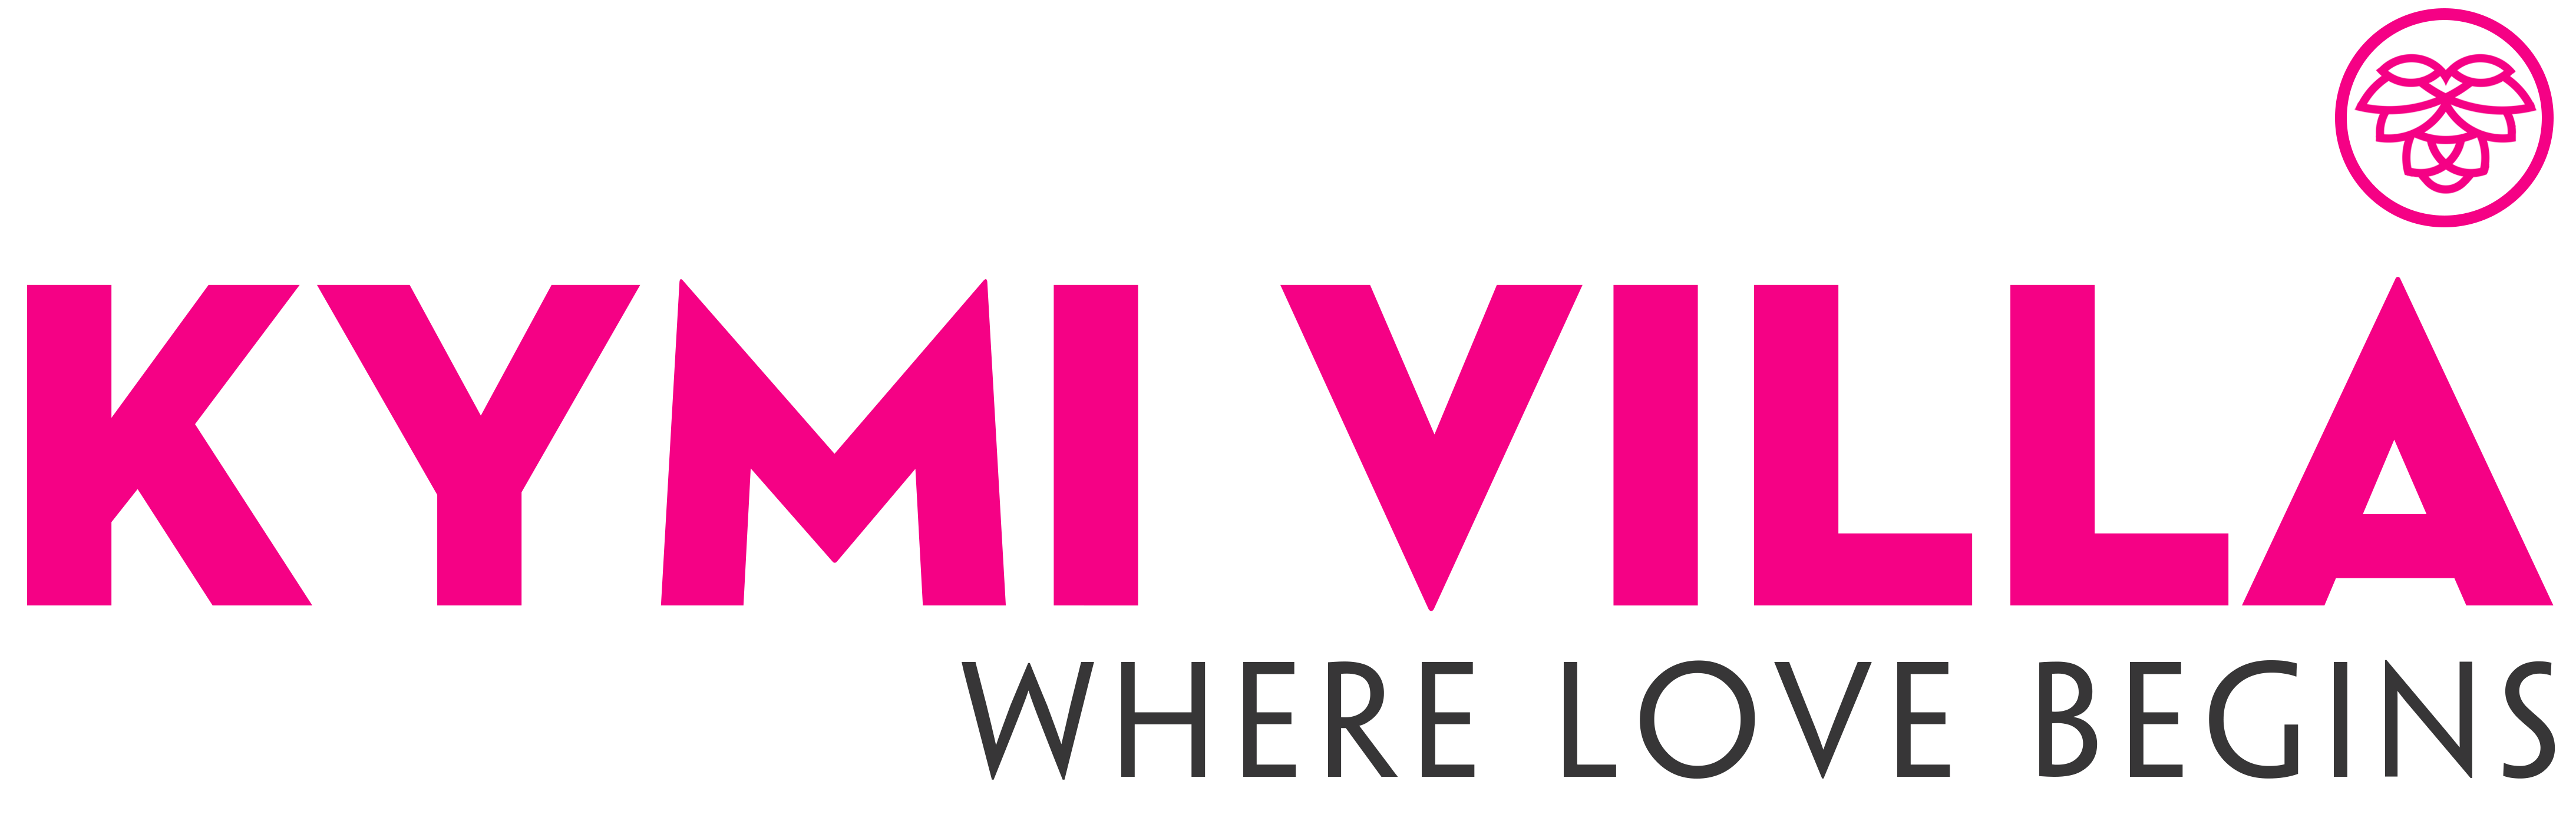 p_1691548333_kymi-villa-da-lat_logo_kymivilla_logo.jpg